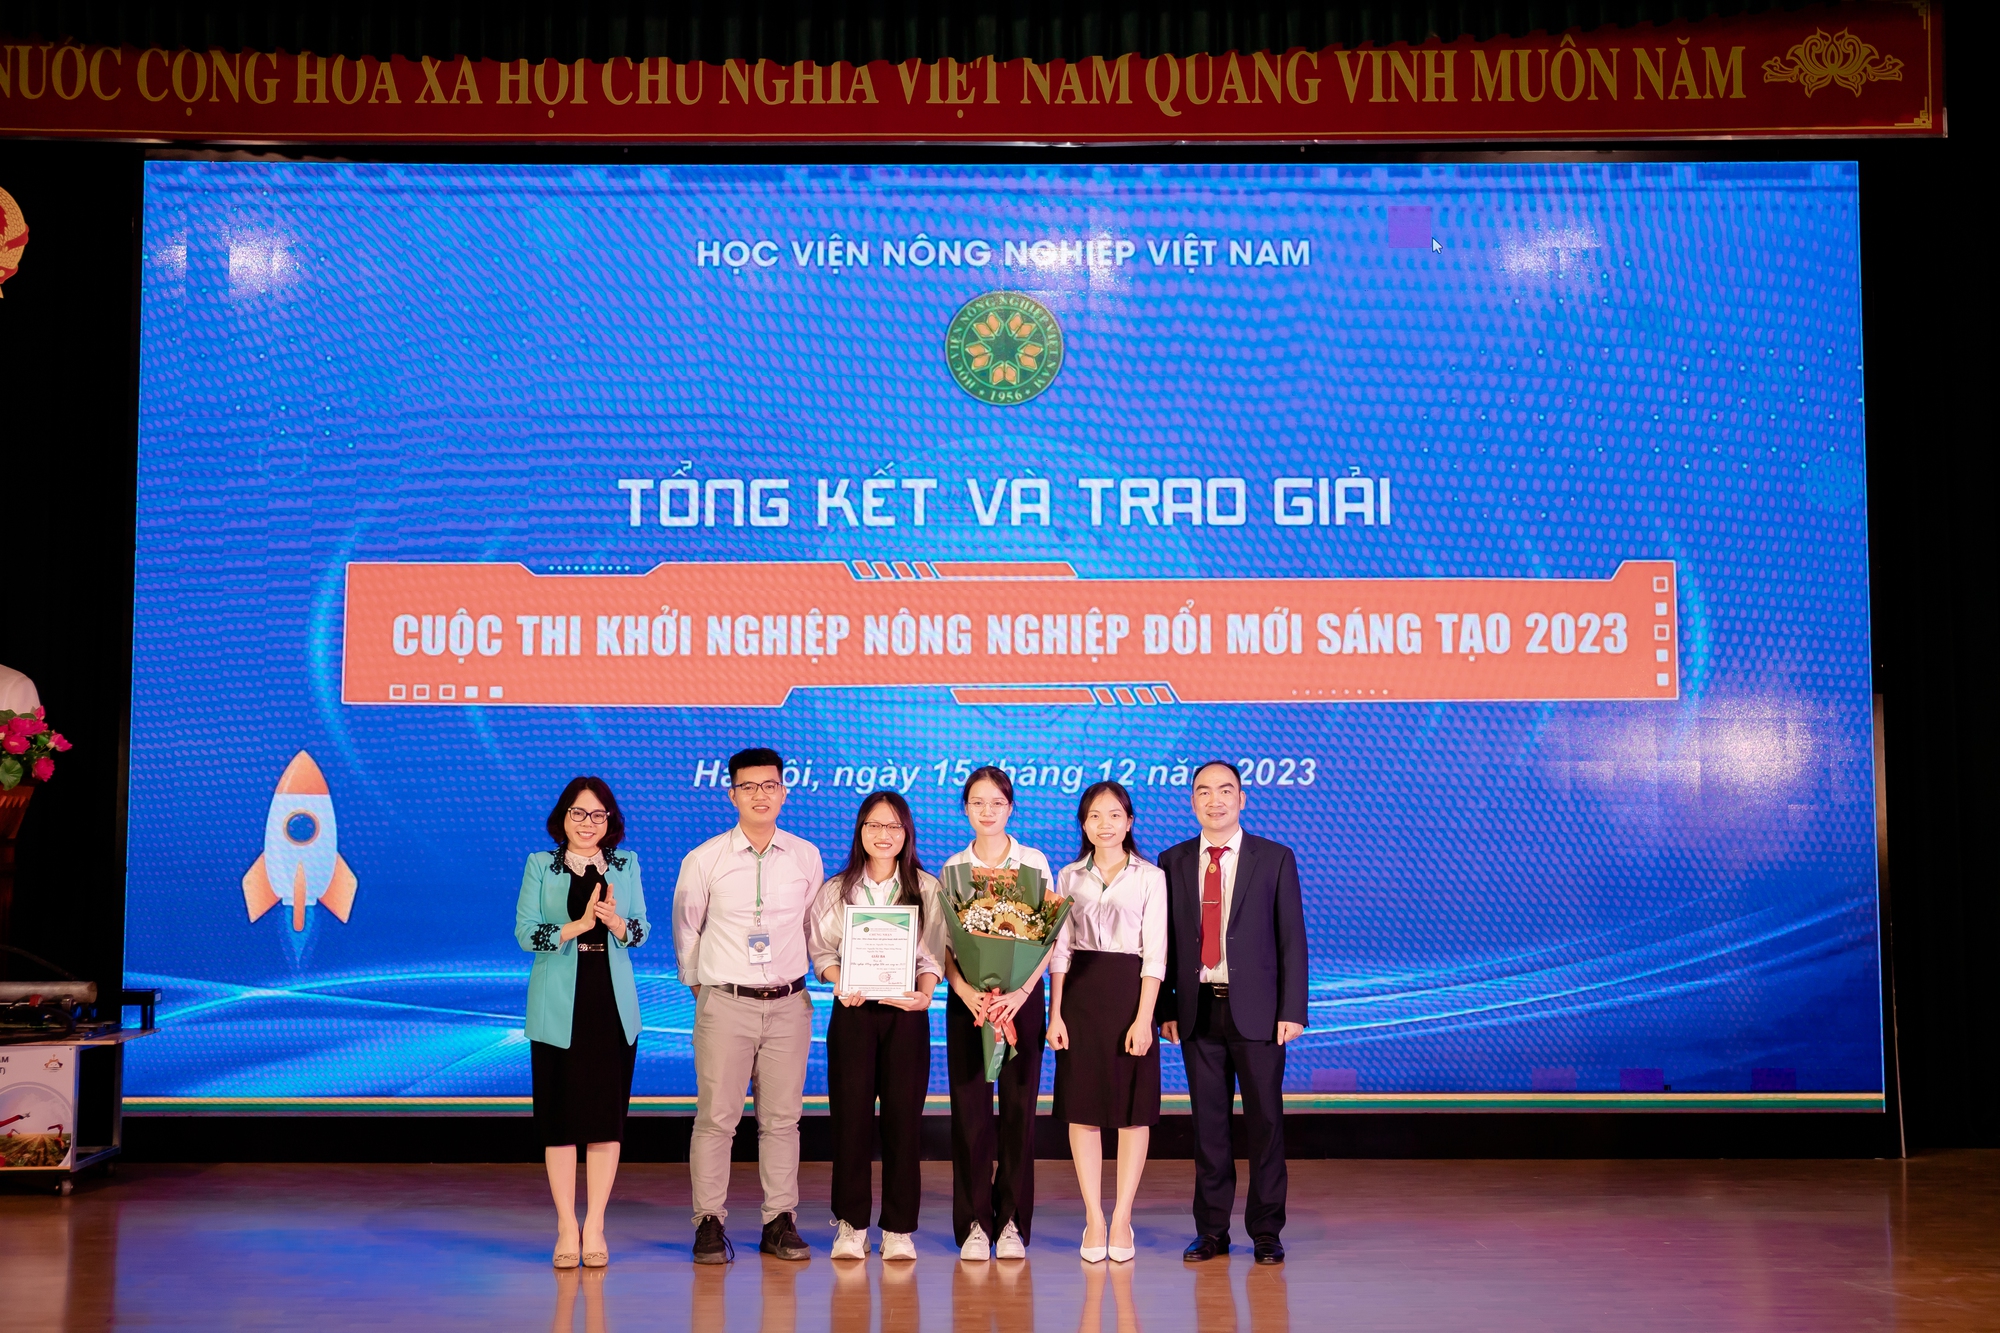 Chế tạo máy hàn tự động, sinh viên Học viện Nông nghiệp Việt Nam giành giải Nhất cuộc thi khởi nghiệp - Ảnh 4.